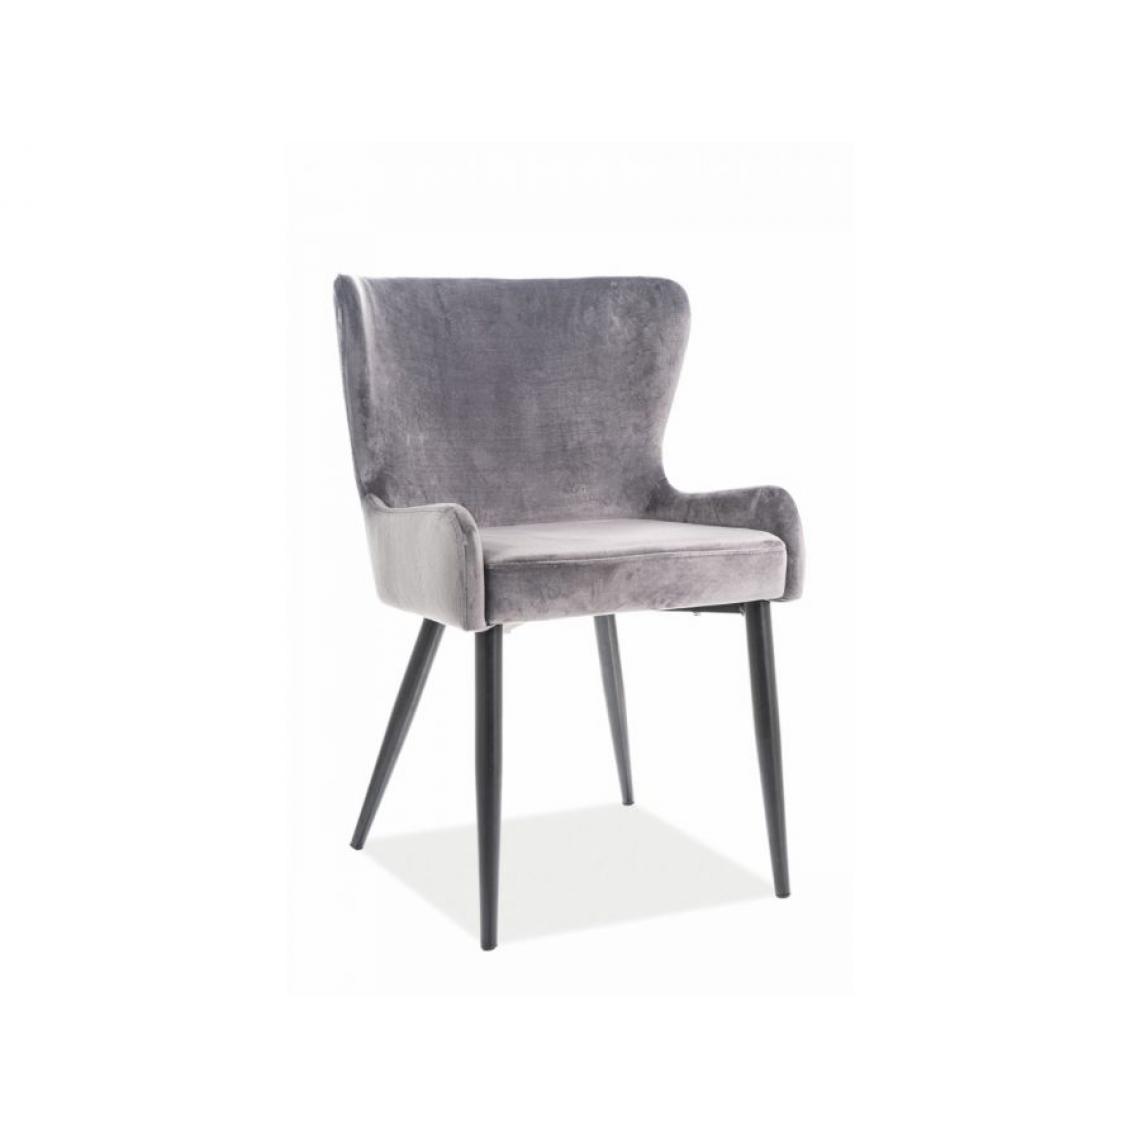 Hucoco - PASSI | Chaise moderne style glamour salon bureau | Dimensions : 86x43x46 cm | Rembourrée en velours | Pieds en métal - gris - Chaises